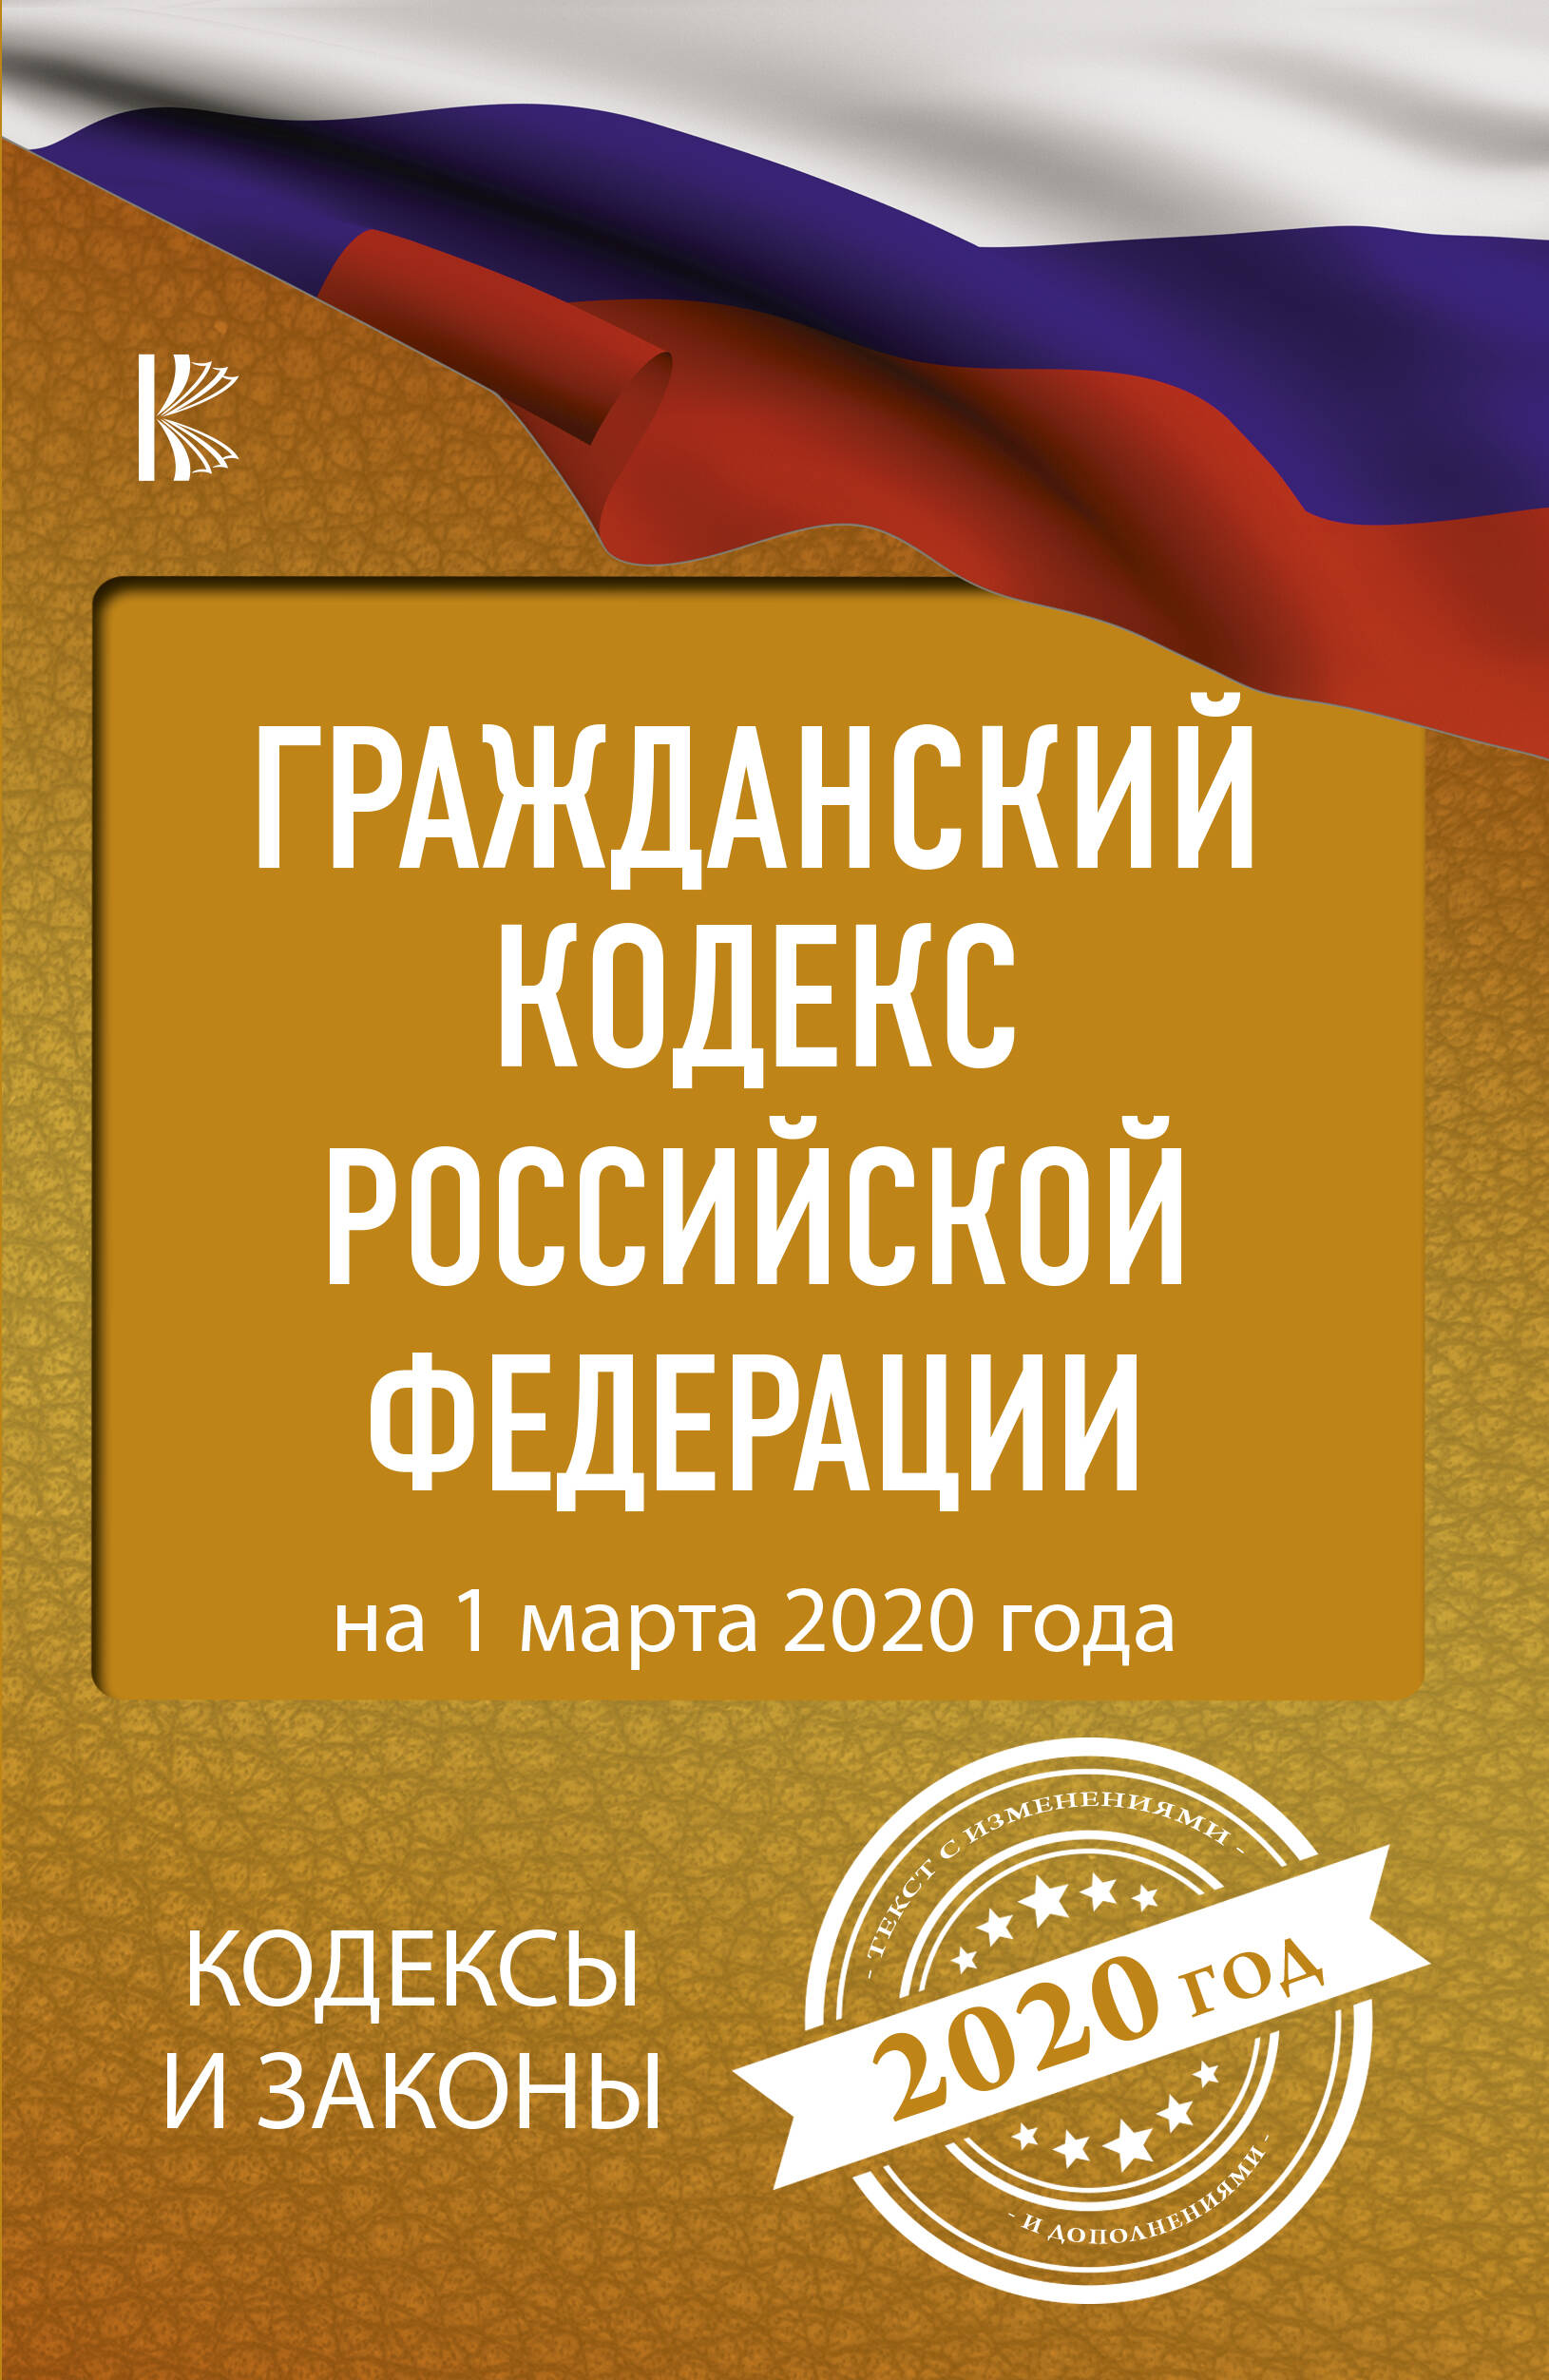  Гражданский Кодекс Российской Федерации на 1 марта 2020 года - страница 0